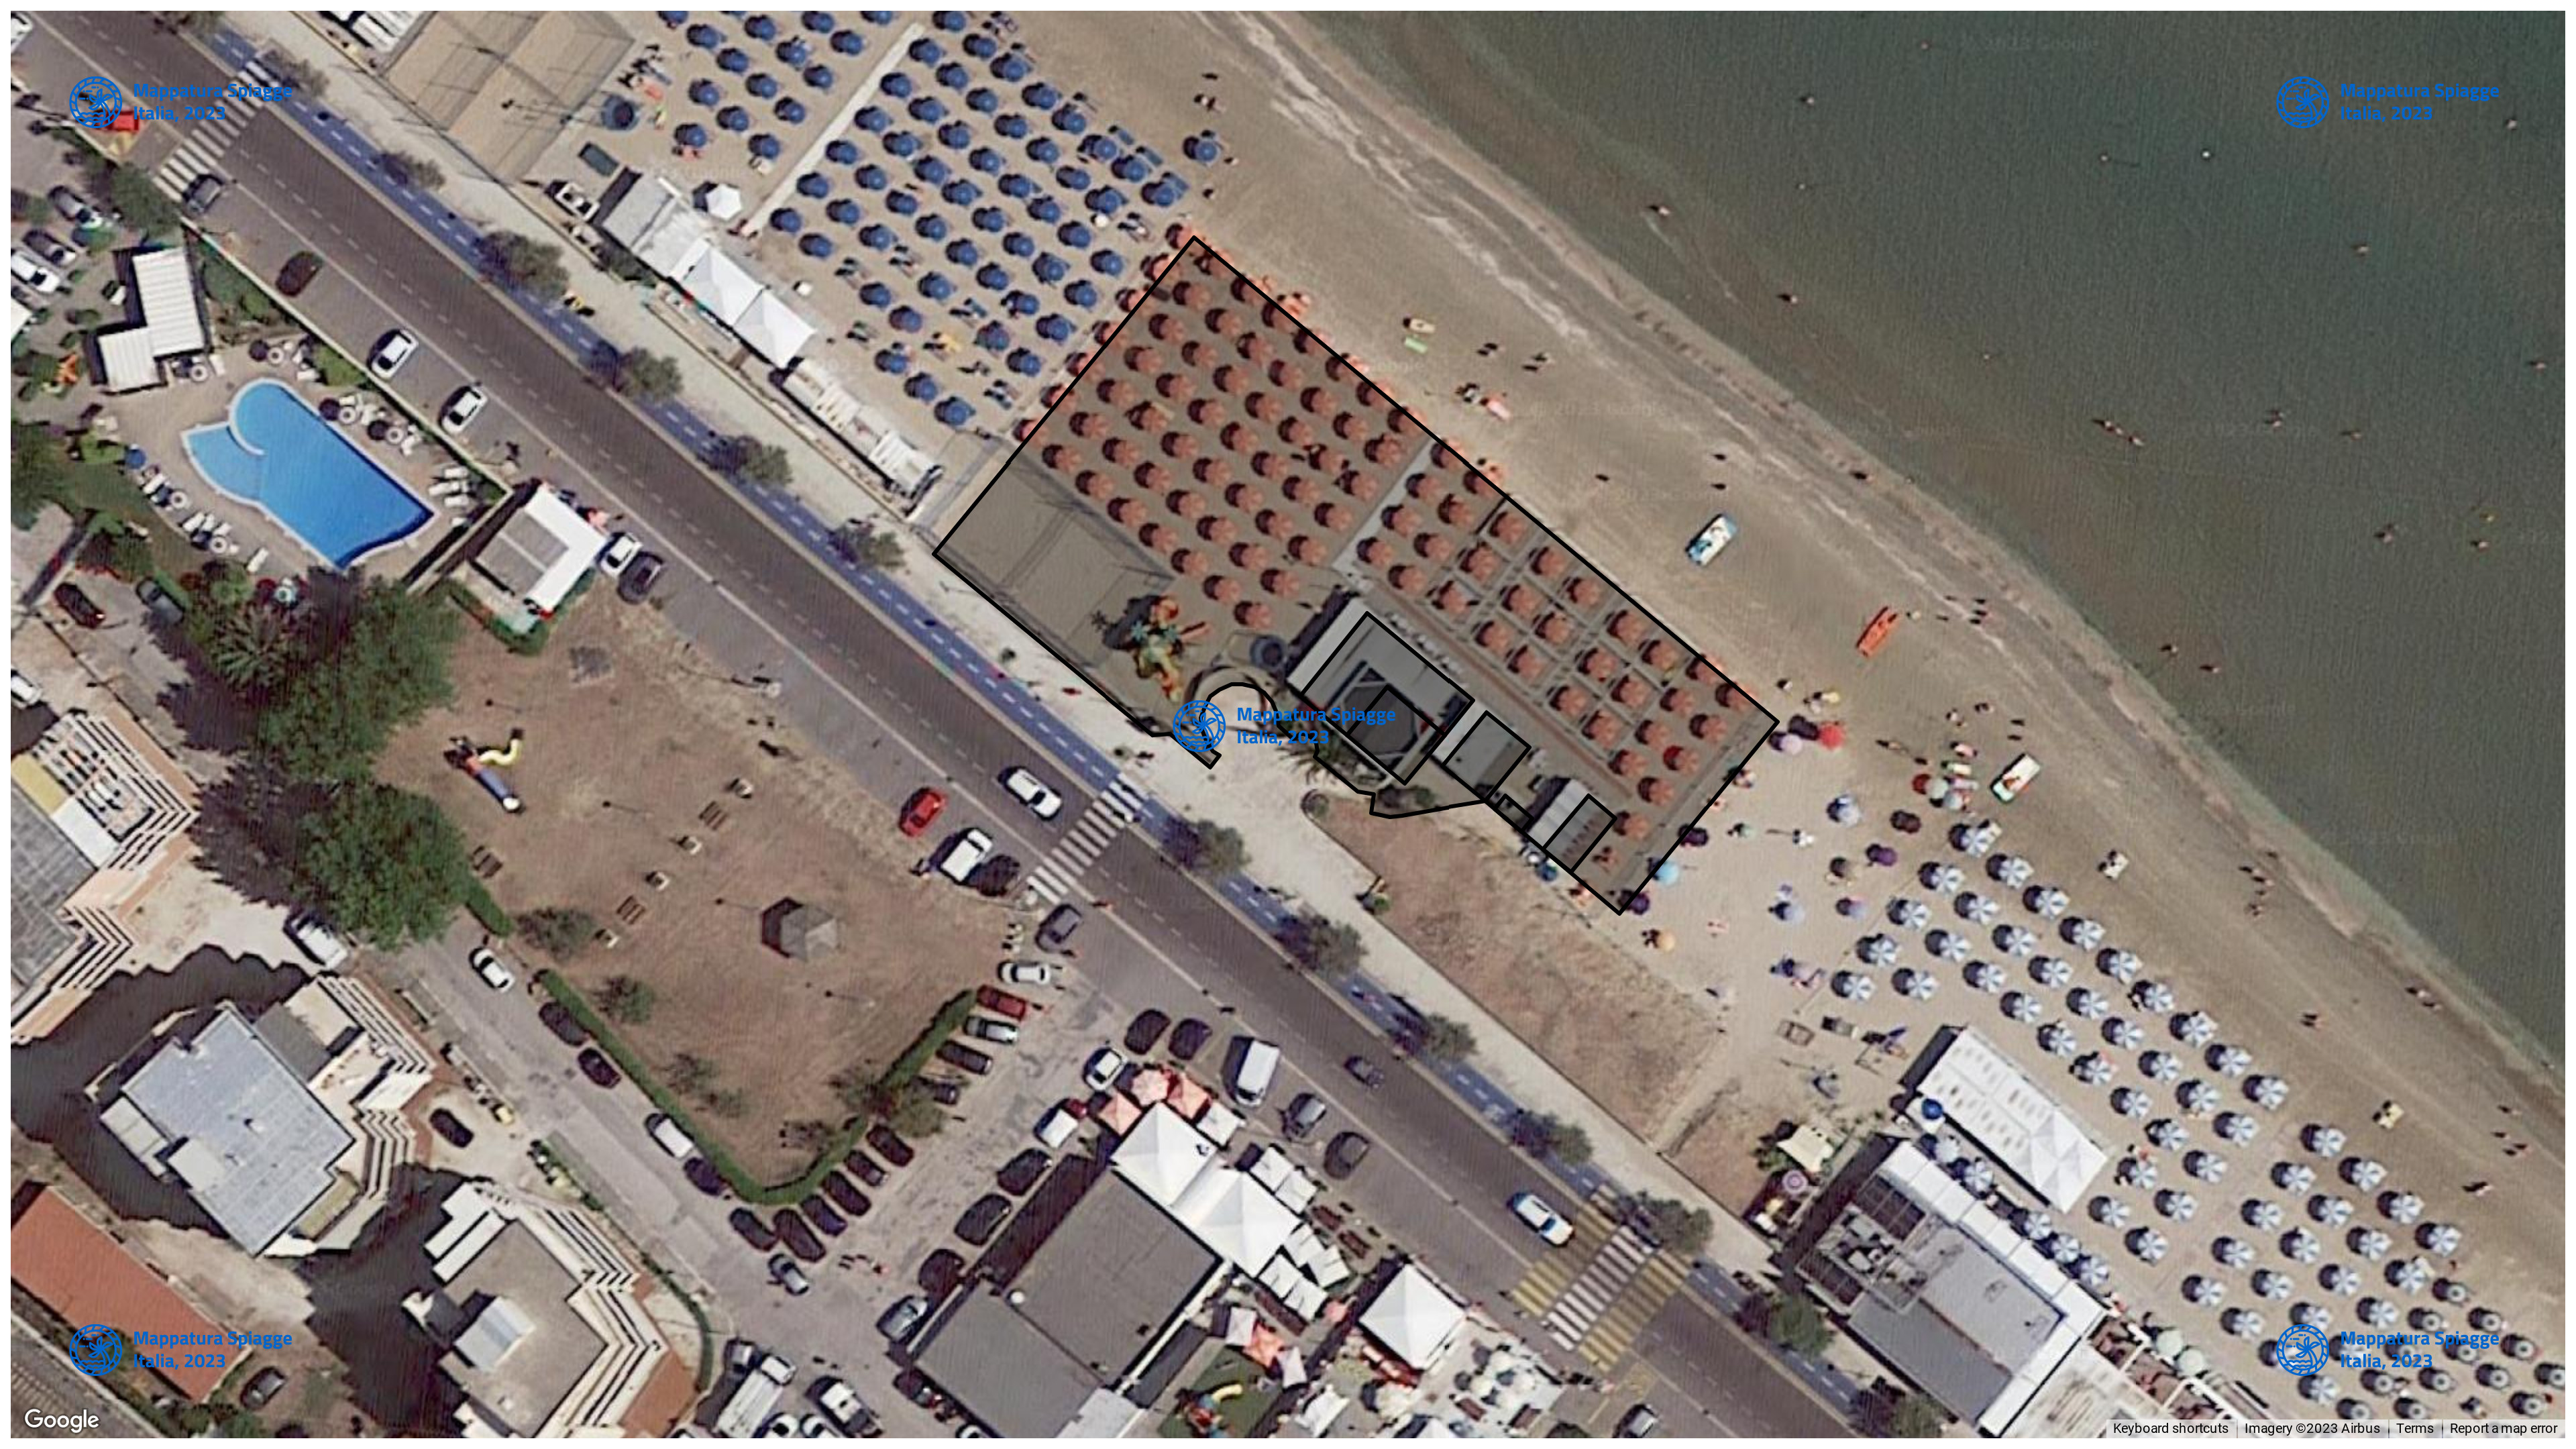 Foto Satellitare - Google Maps - Comune Senigallia, Concessione: N. 27 / 2019 del 19-09-2023